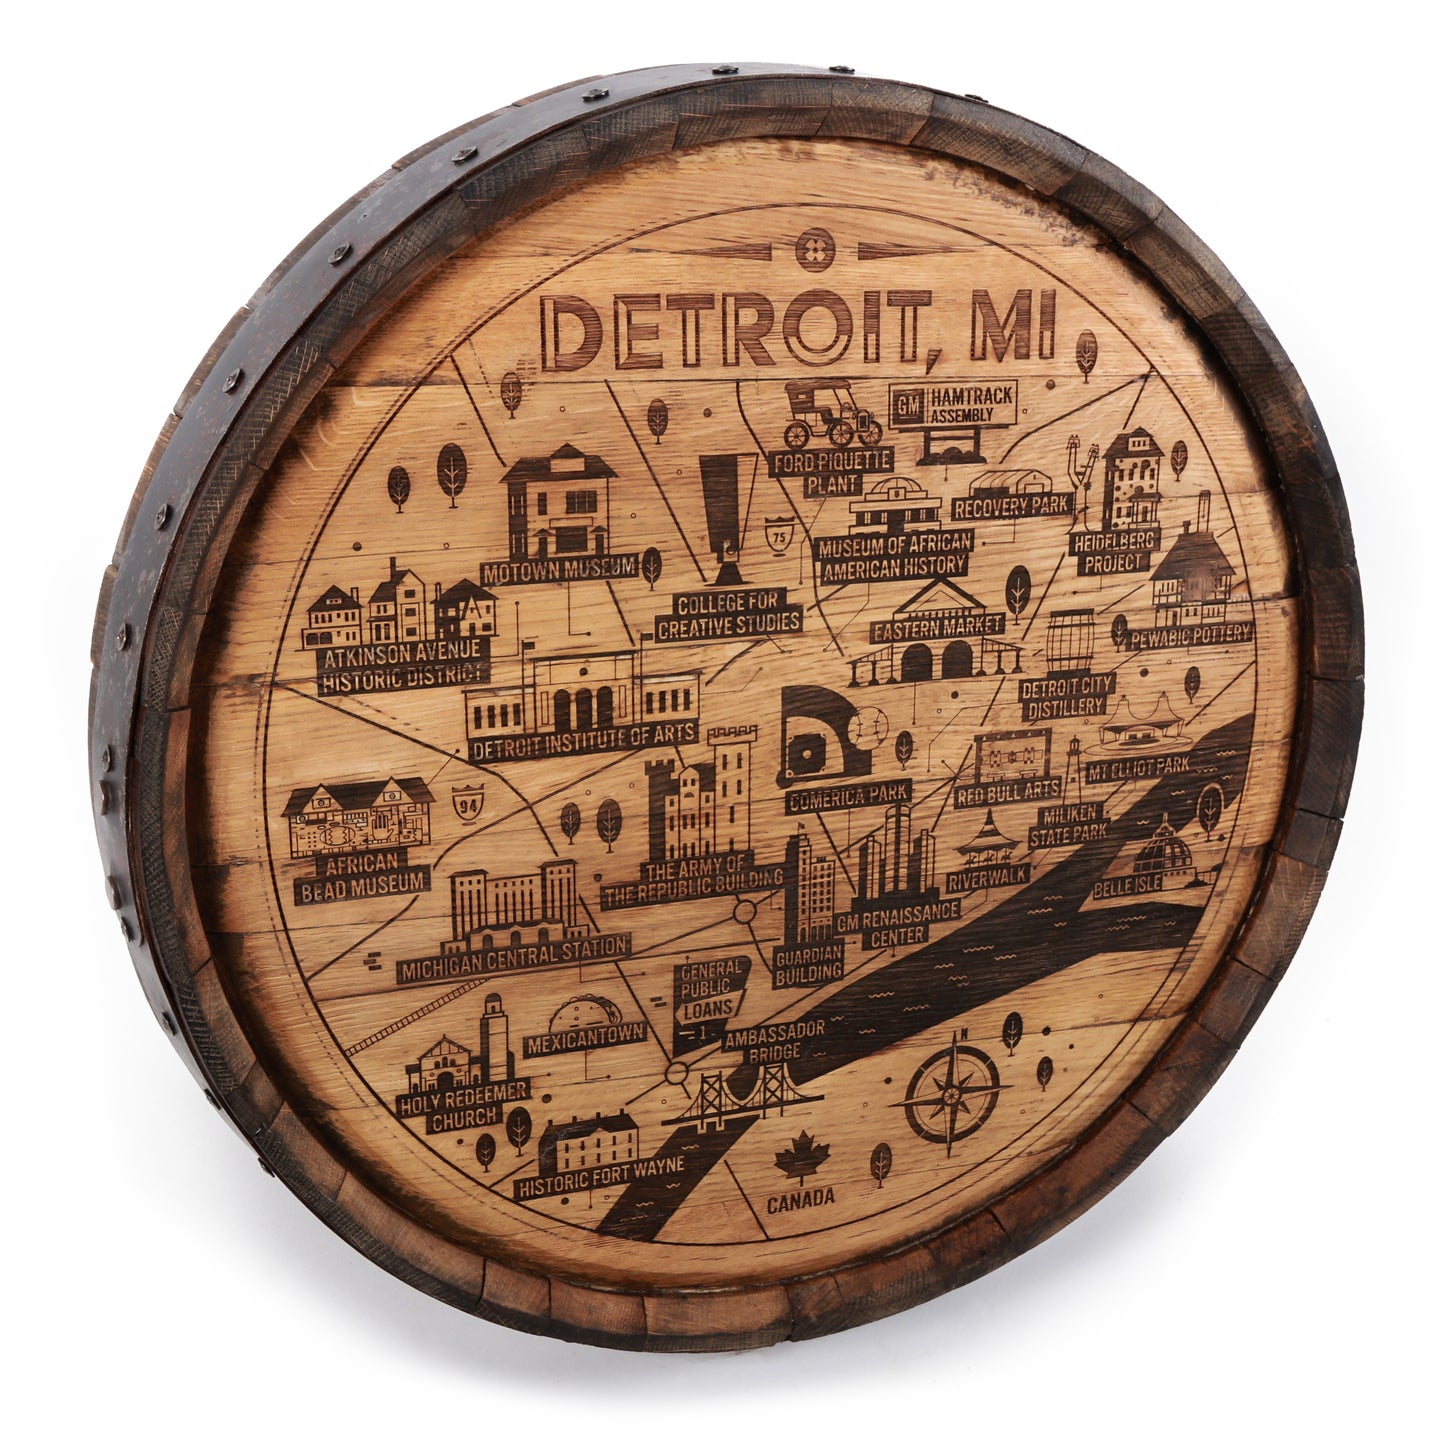 Detroit Map Barrel Cap - Motor City Barrels